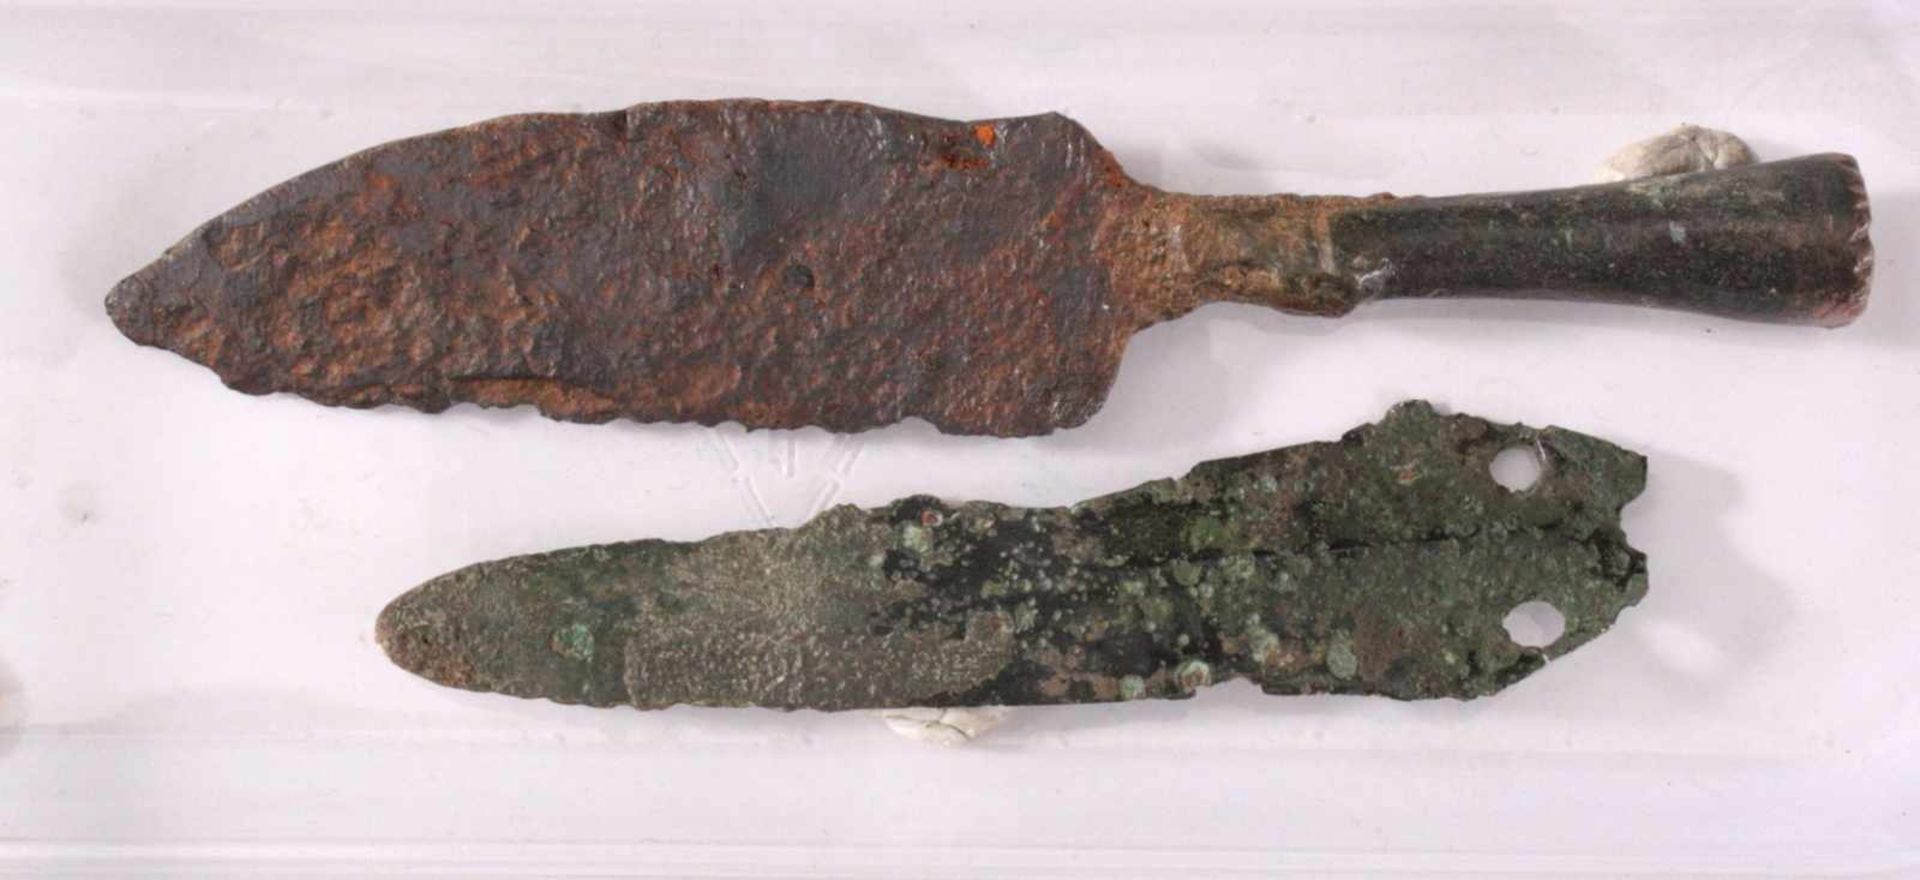 Keltischer Dolch und MesserMesser aus Eisen, ca. L- 11,5 cm.Dolch aus Bronze, ca. L- 8 cm